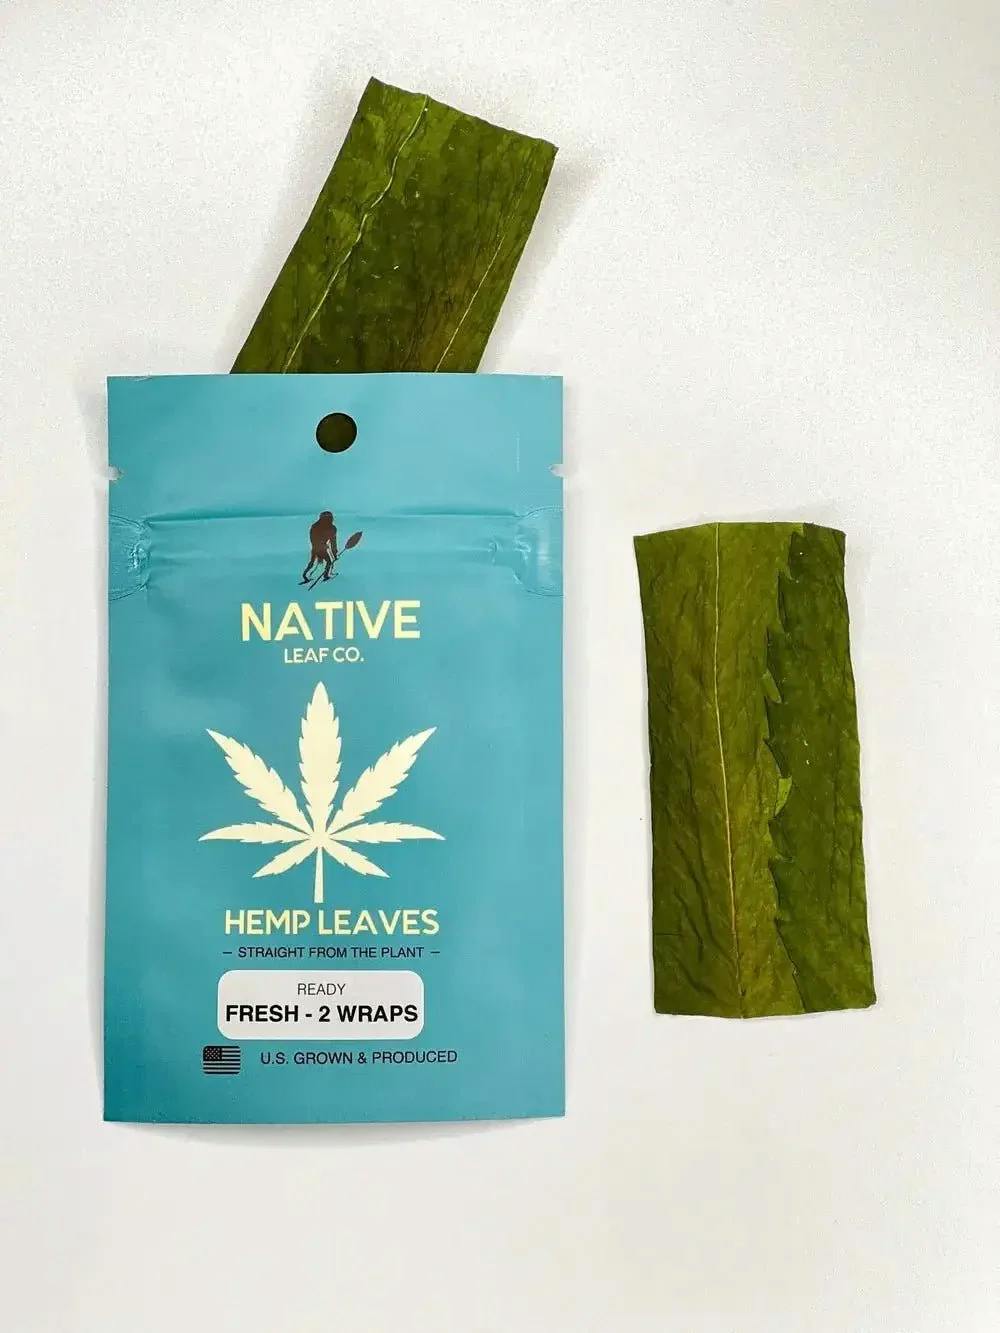 Native Leaf Co. - Fresh Hemp Leaf Wraps 2-Pack